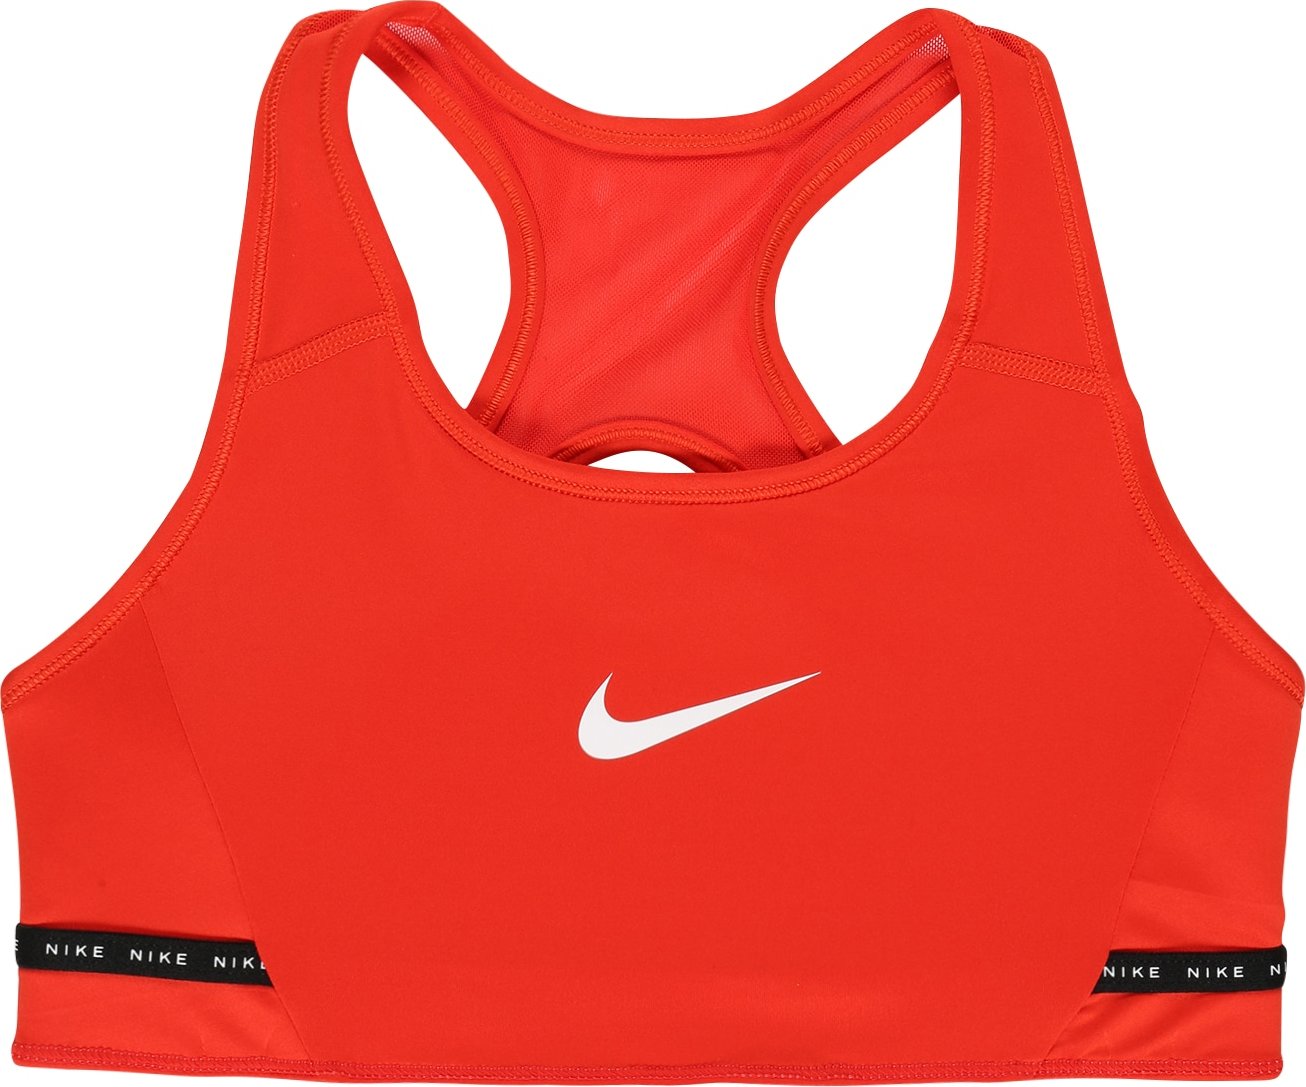 NIKE Sportovní spodní prádlo mix barev / červená / melounová / černá / bílá